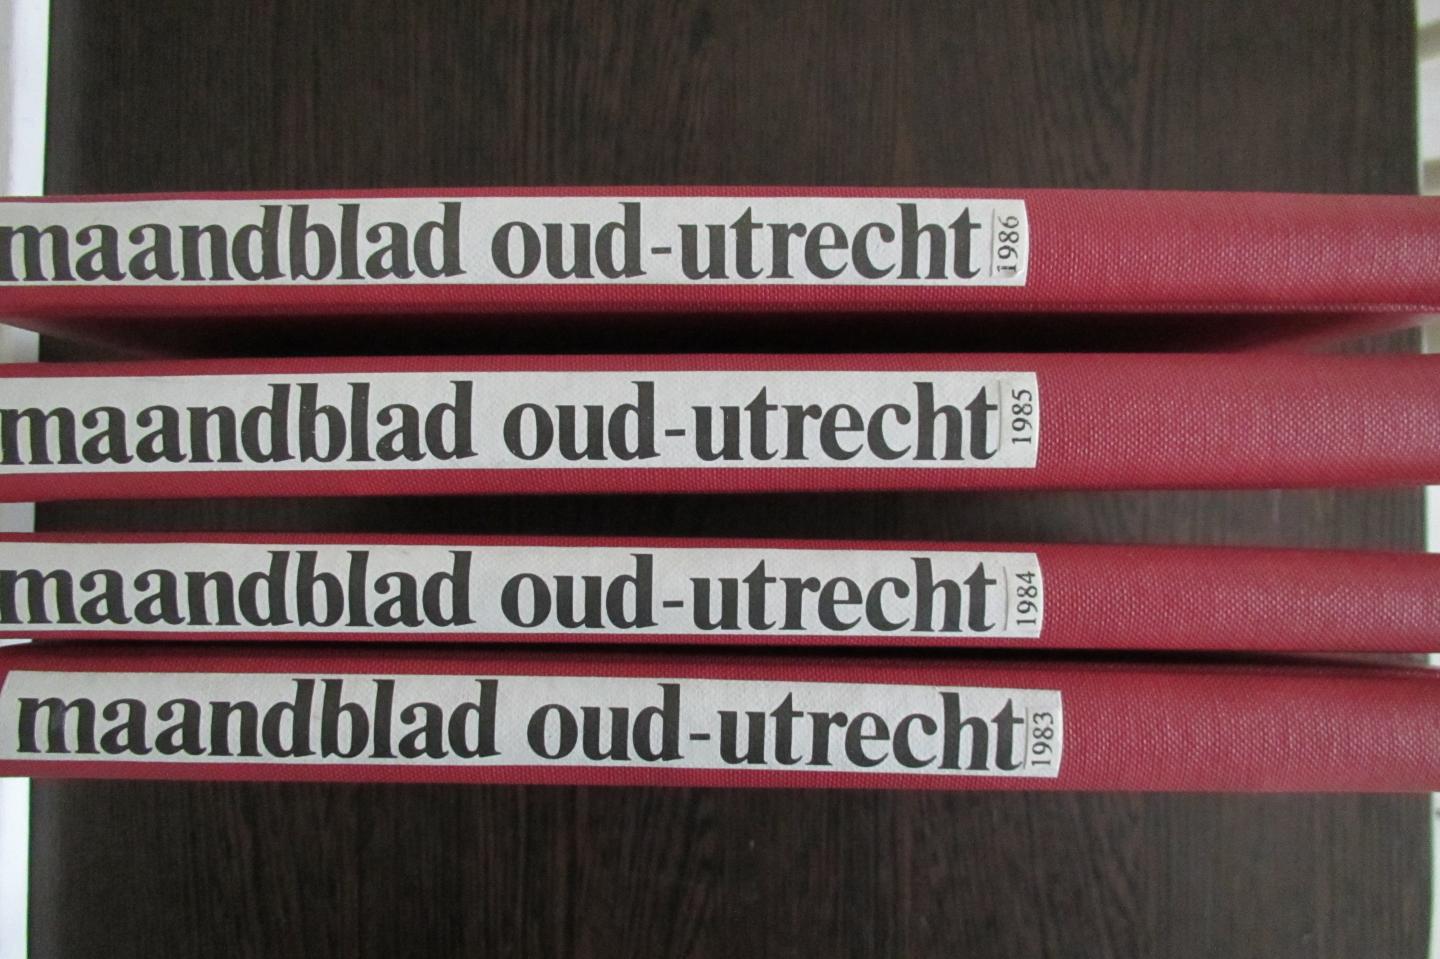 redactie / diverse auteurs - Maandblad oud-Utrecht ingebonden jaargangen 1983 t/m 1986